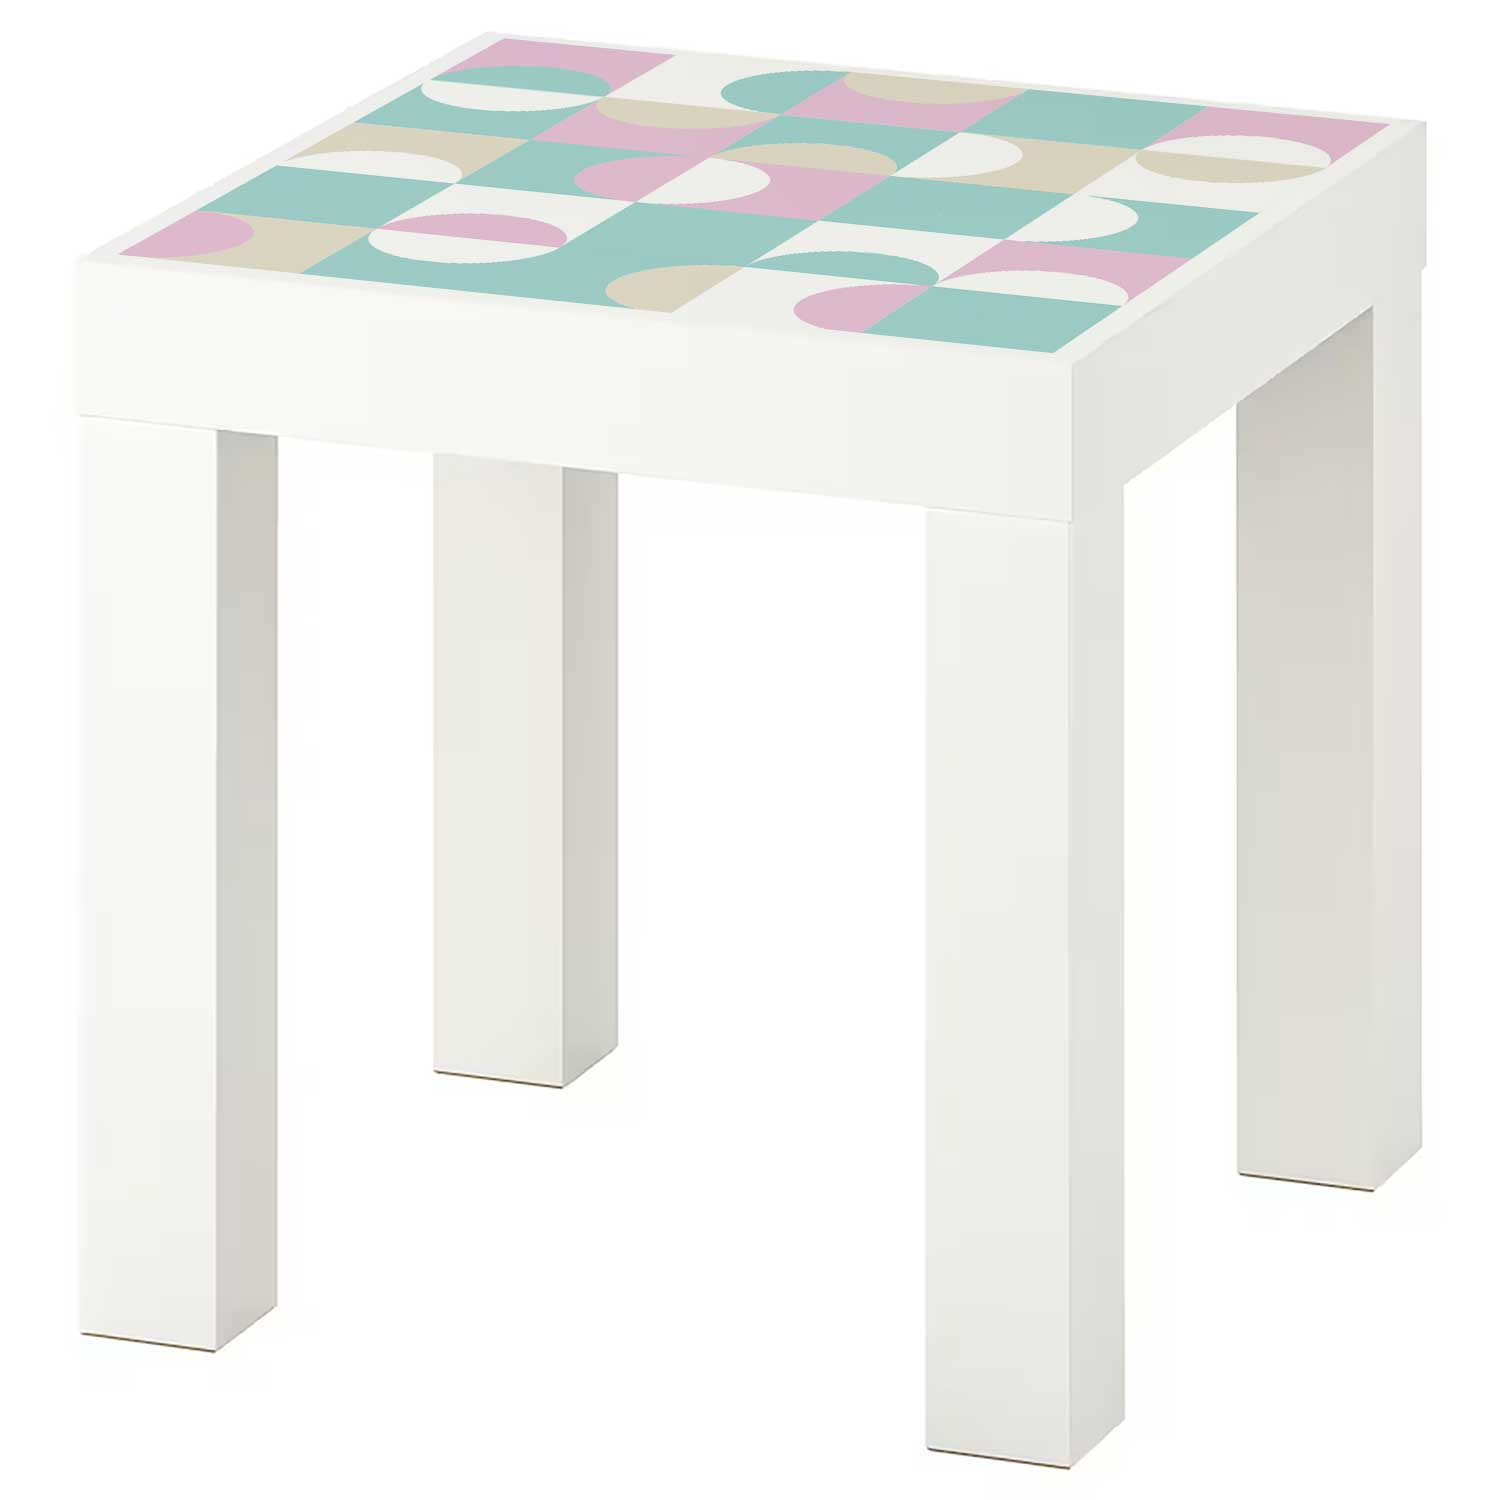 Möbelfolie für IKEA Lack Tisch 35x35 cm 'Bauhaus Fliesen'